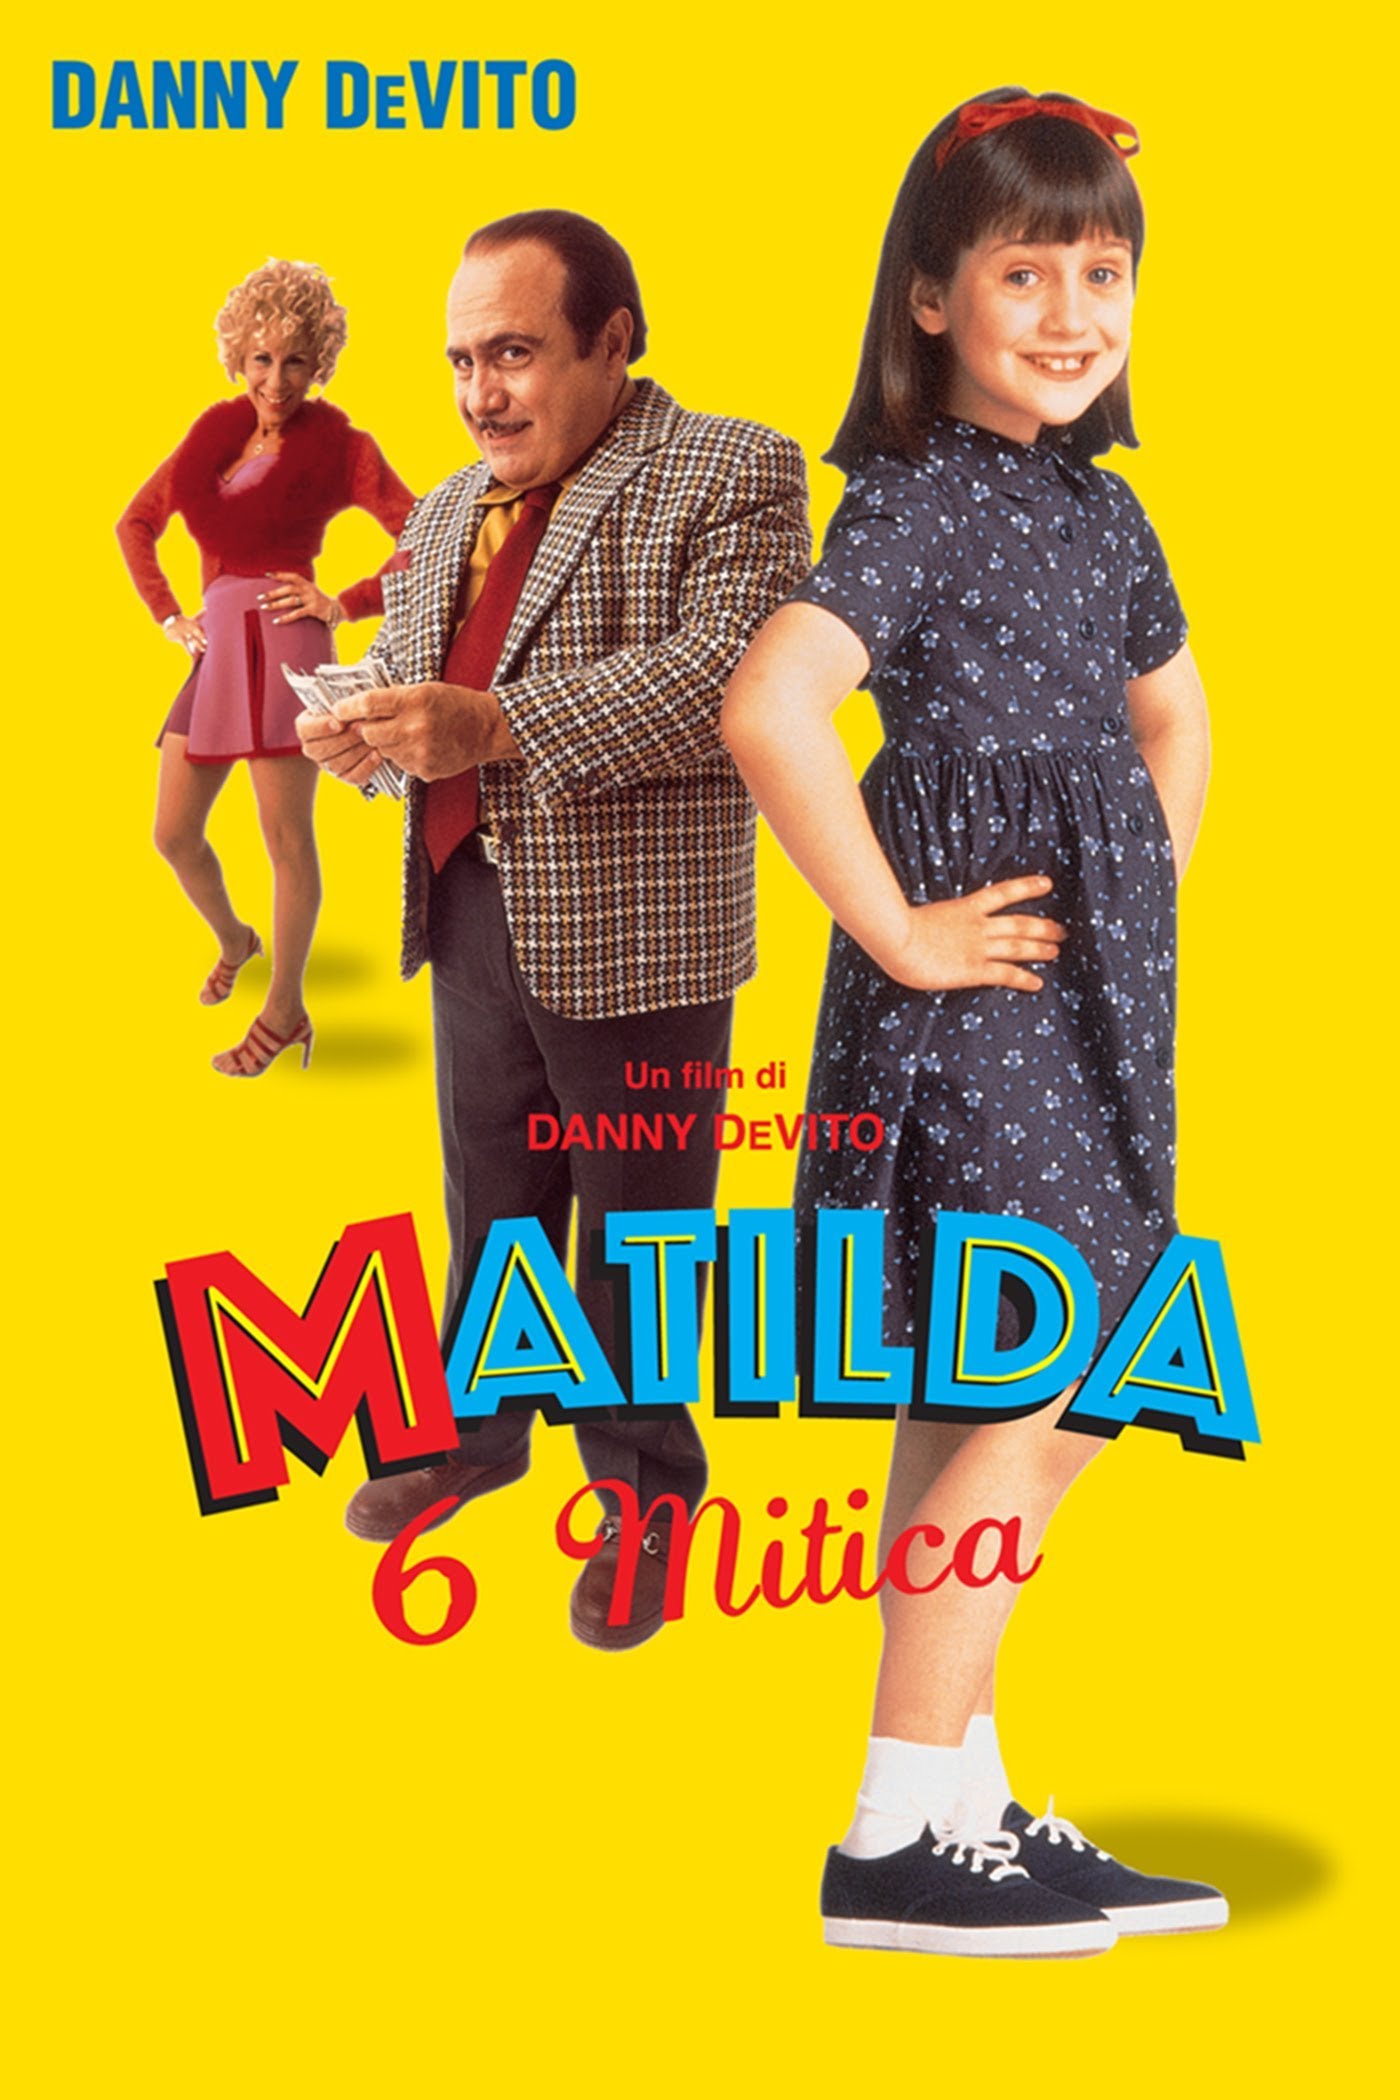 Matilda 6 mitica [HD] (1996)